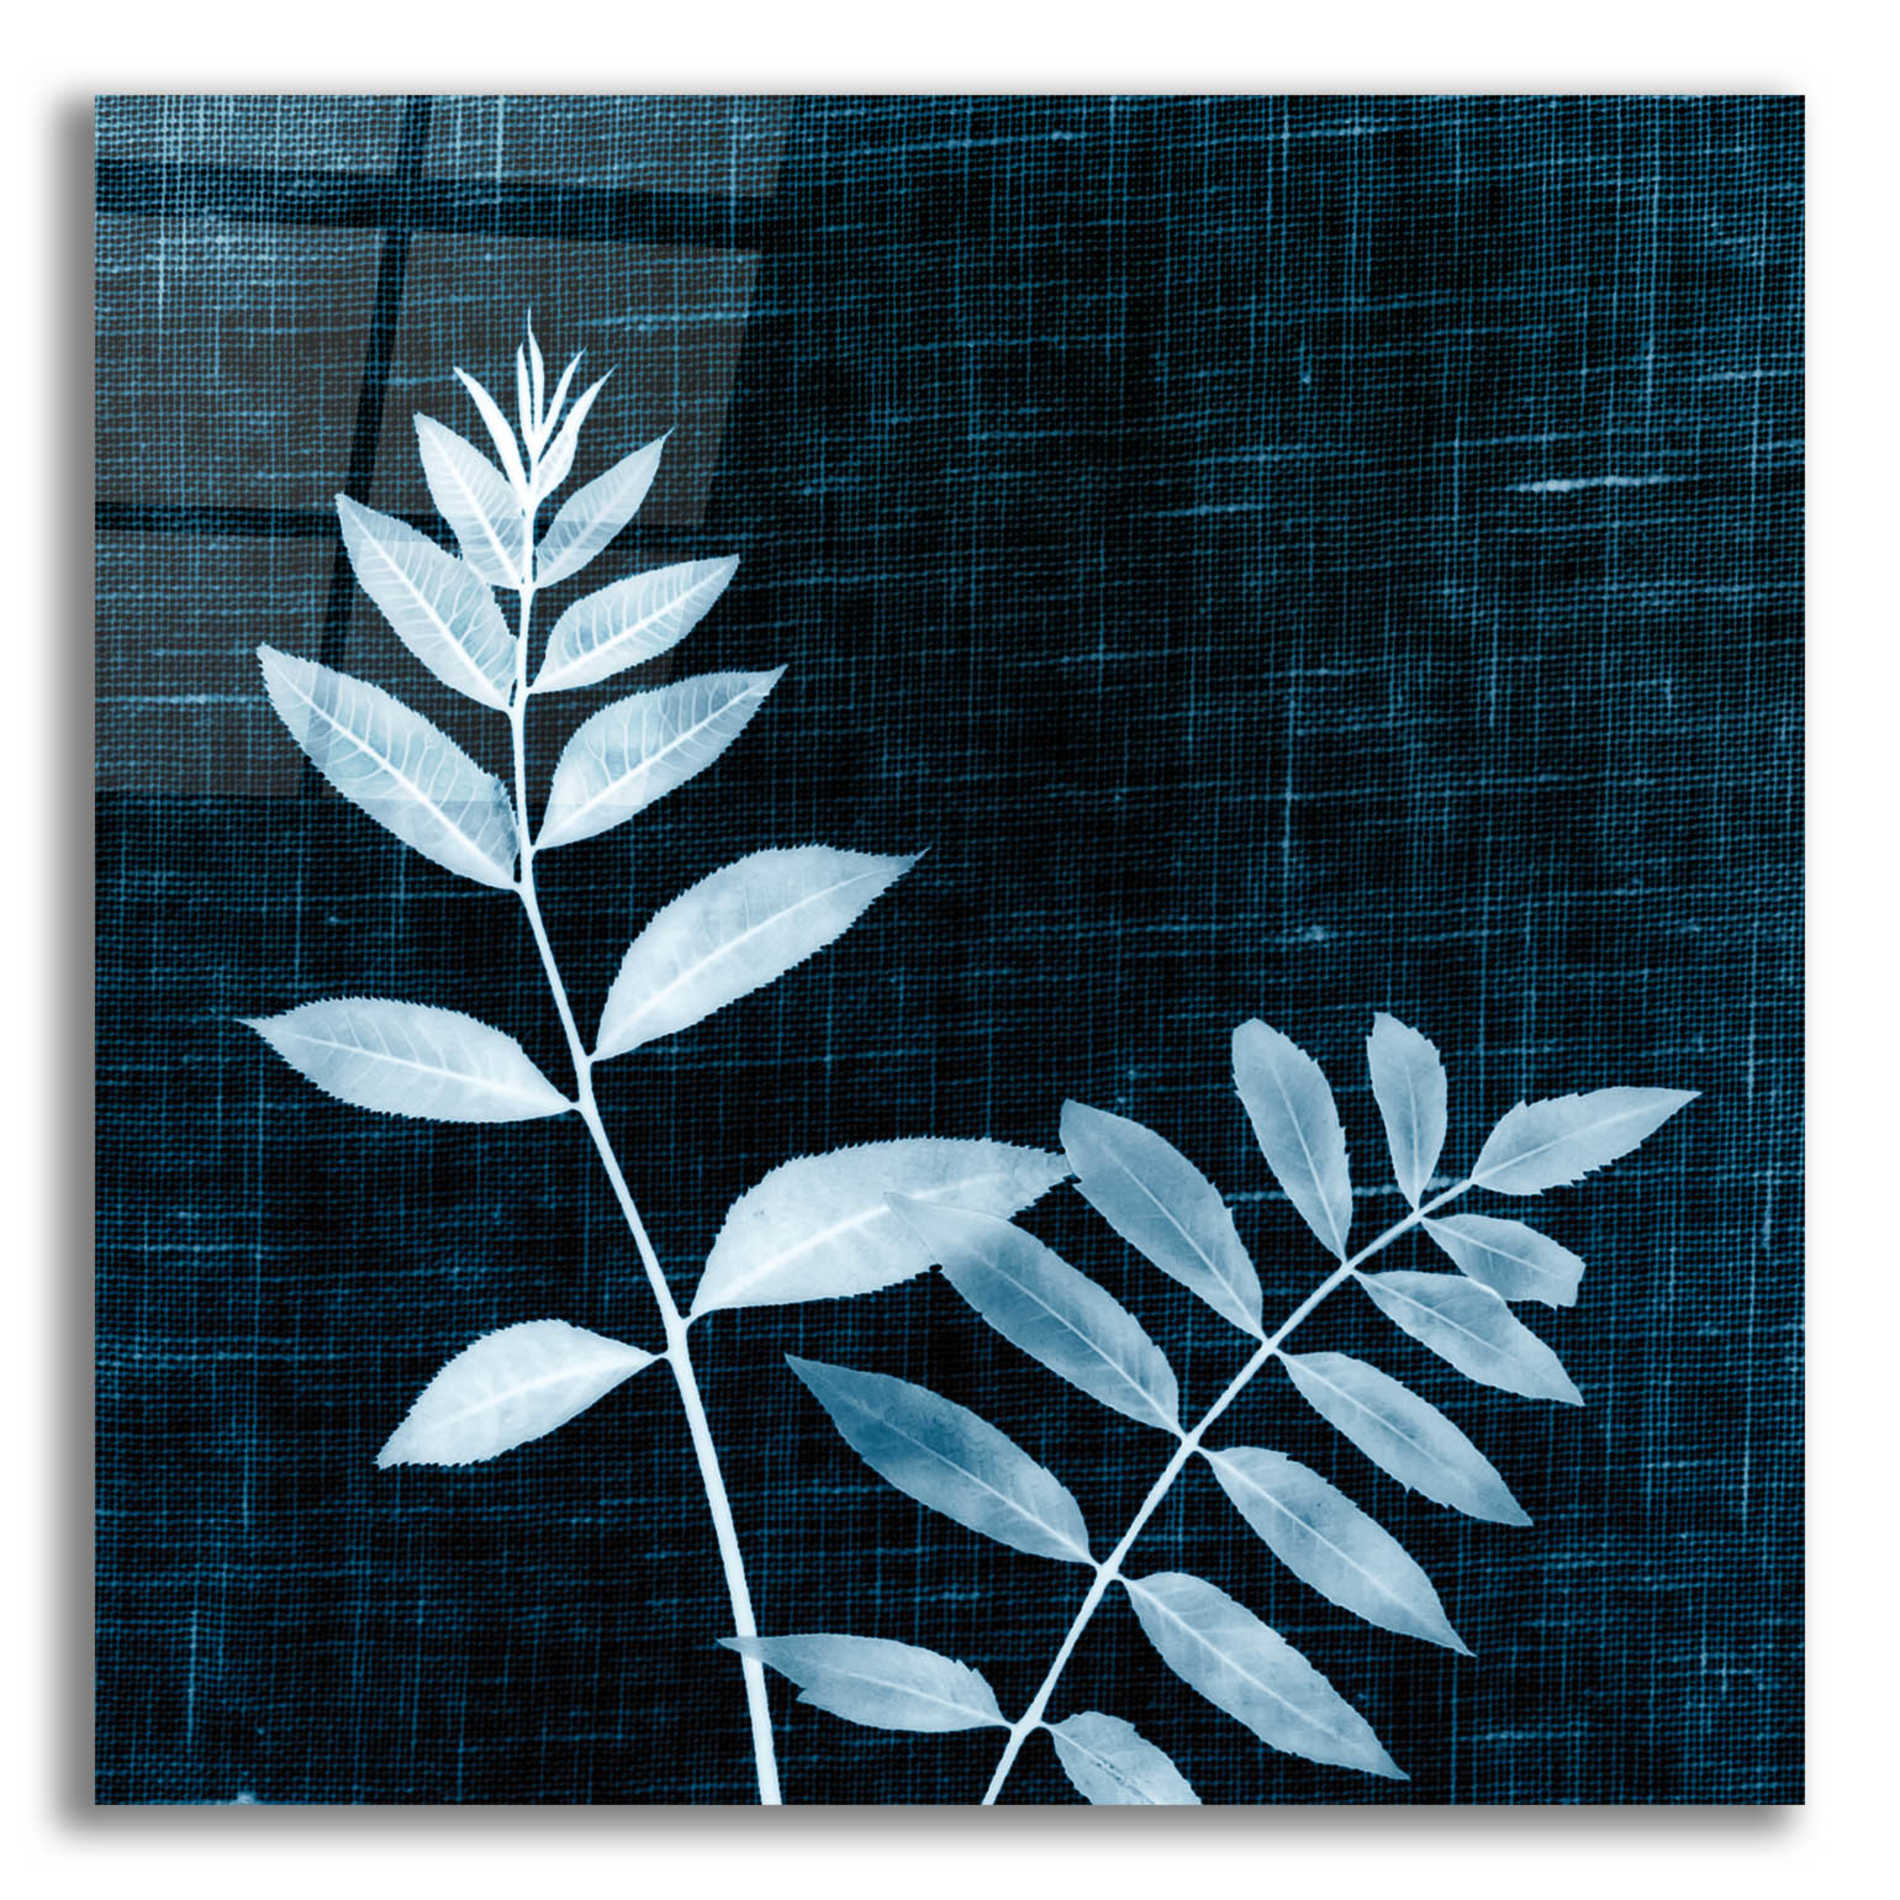 Epic Art 'Leaves on Linen II' by Debra Van Swearingen, Acrylic Glass Wall Art,12x12